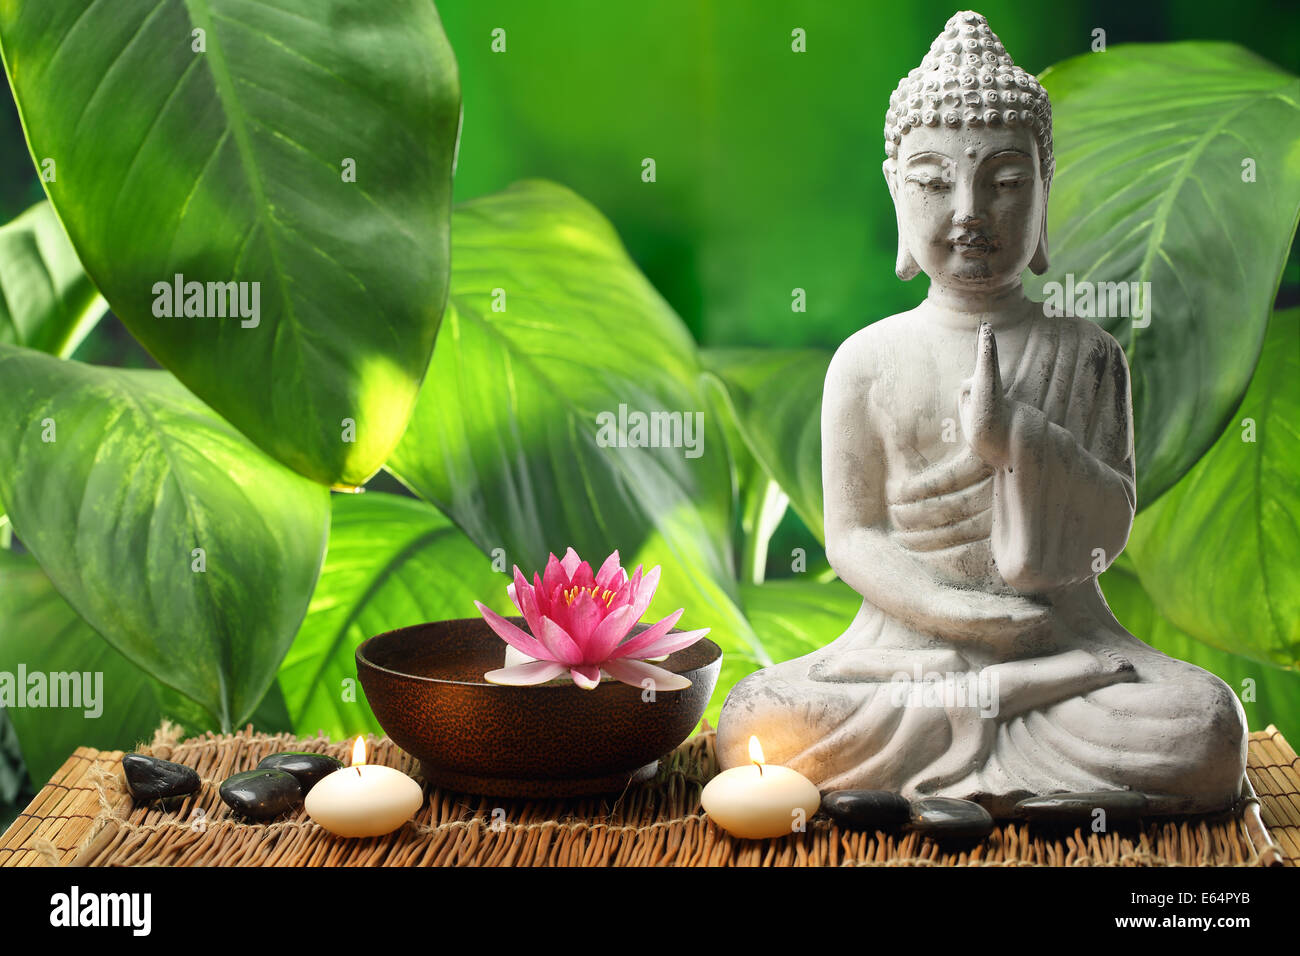 Bouddha En Meditation Avec Fleur De Lotus Et Bruler Des Bougies Photo Stock Alamy